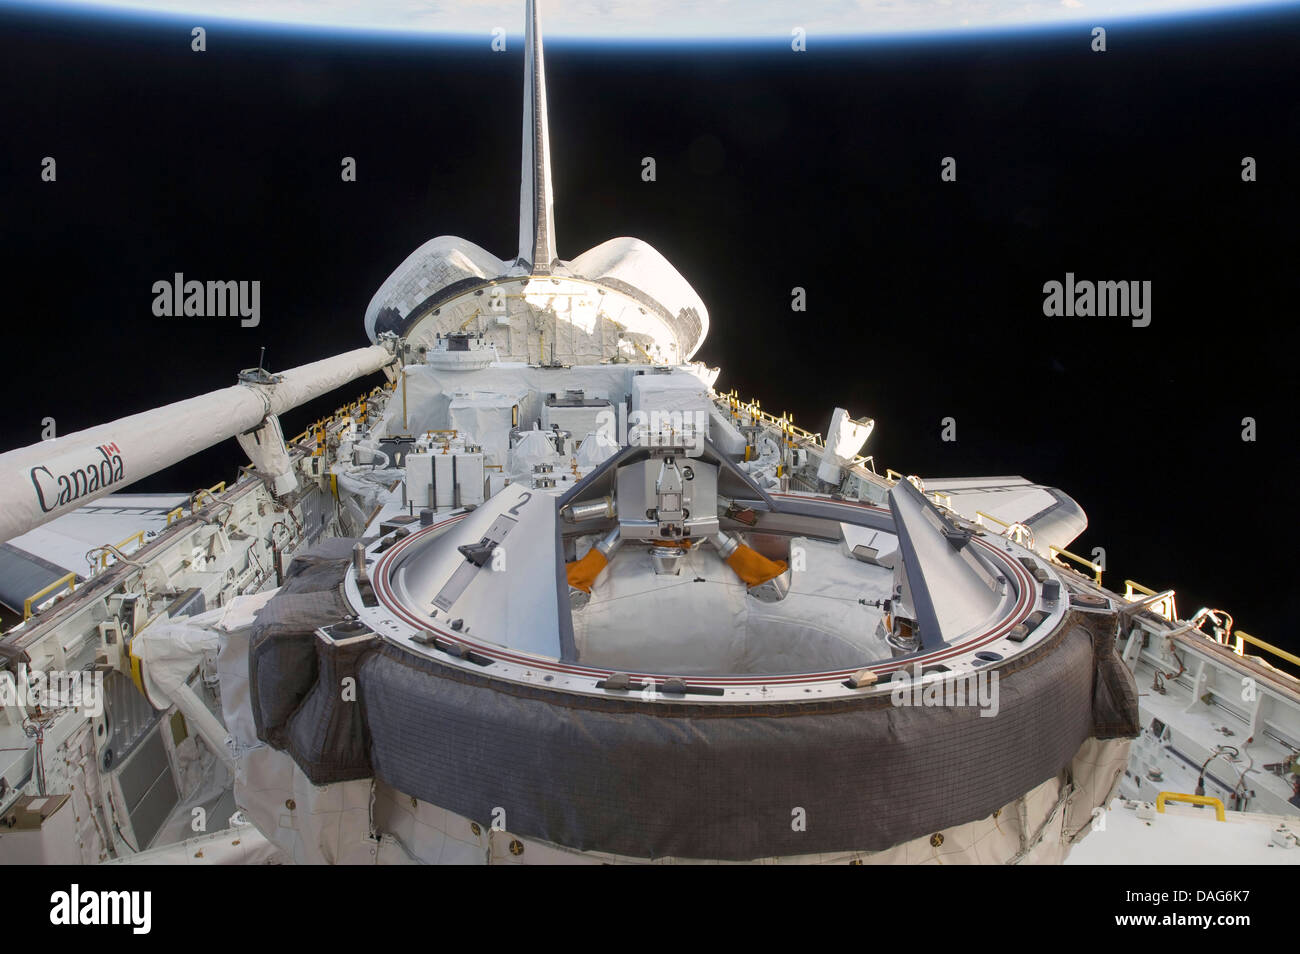 La charge utile de la navette spatiale Endeavour bay avec l'expérience eqiuipment. Version optimisée et améliorée d'un original de l'image de la NASA Banque D'Images